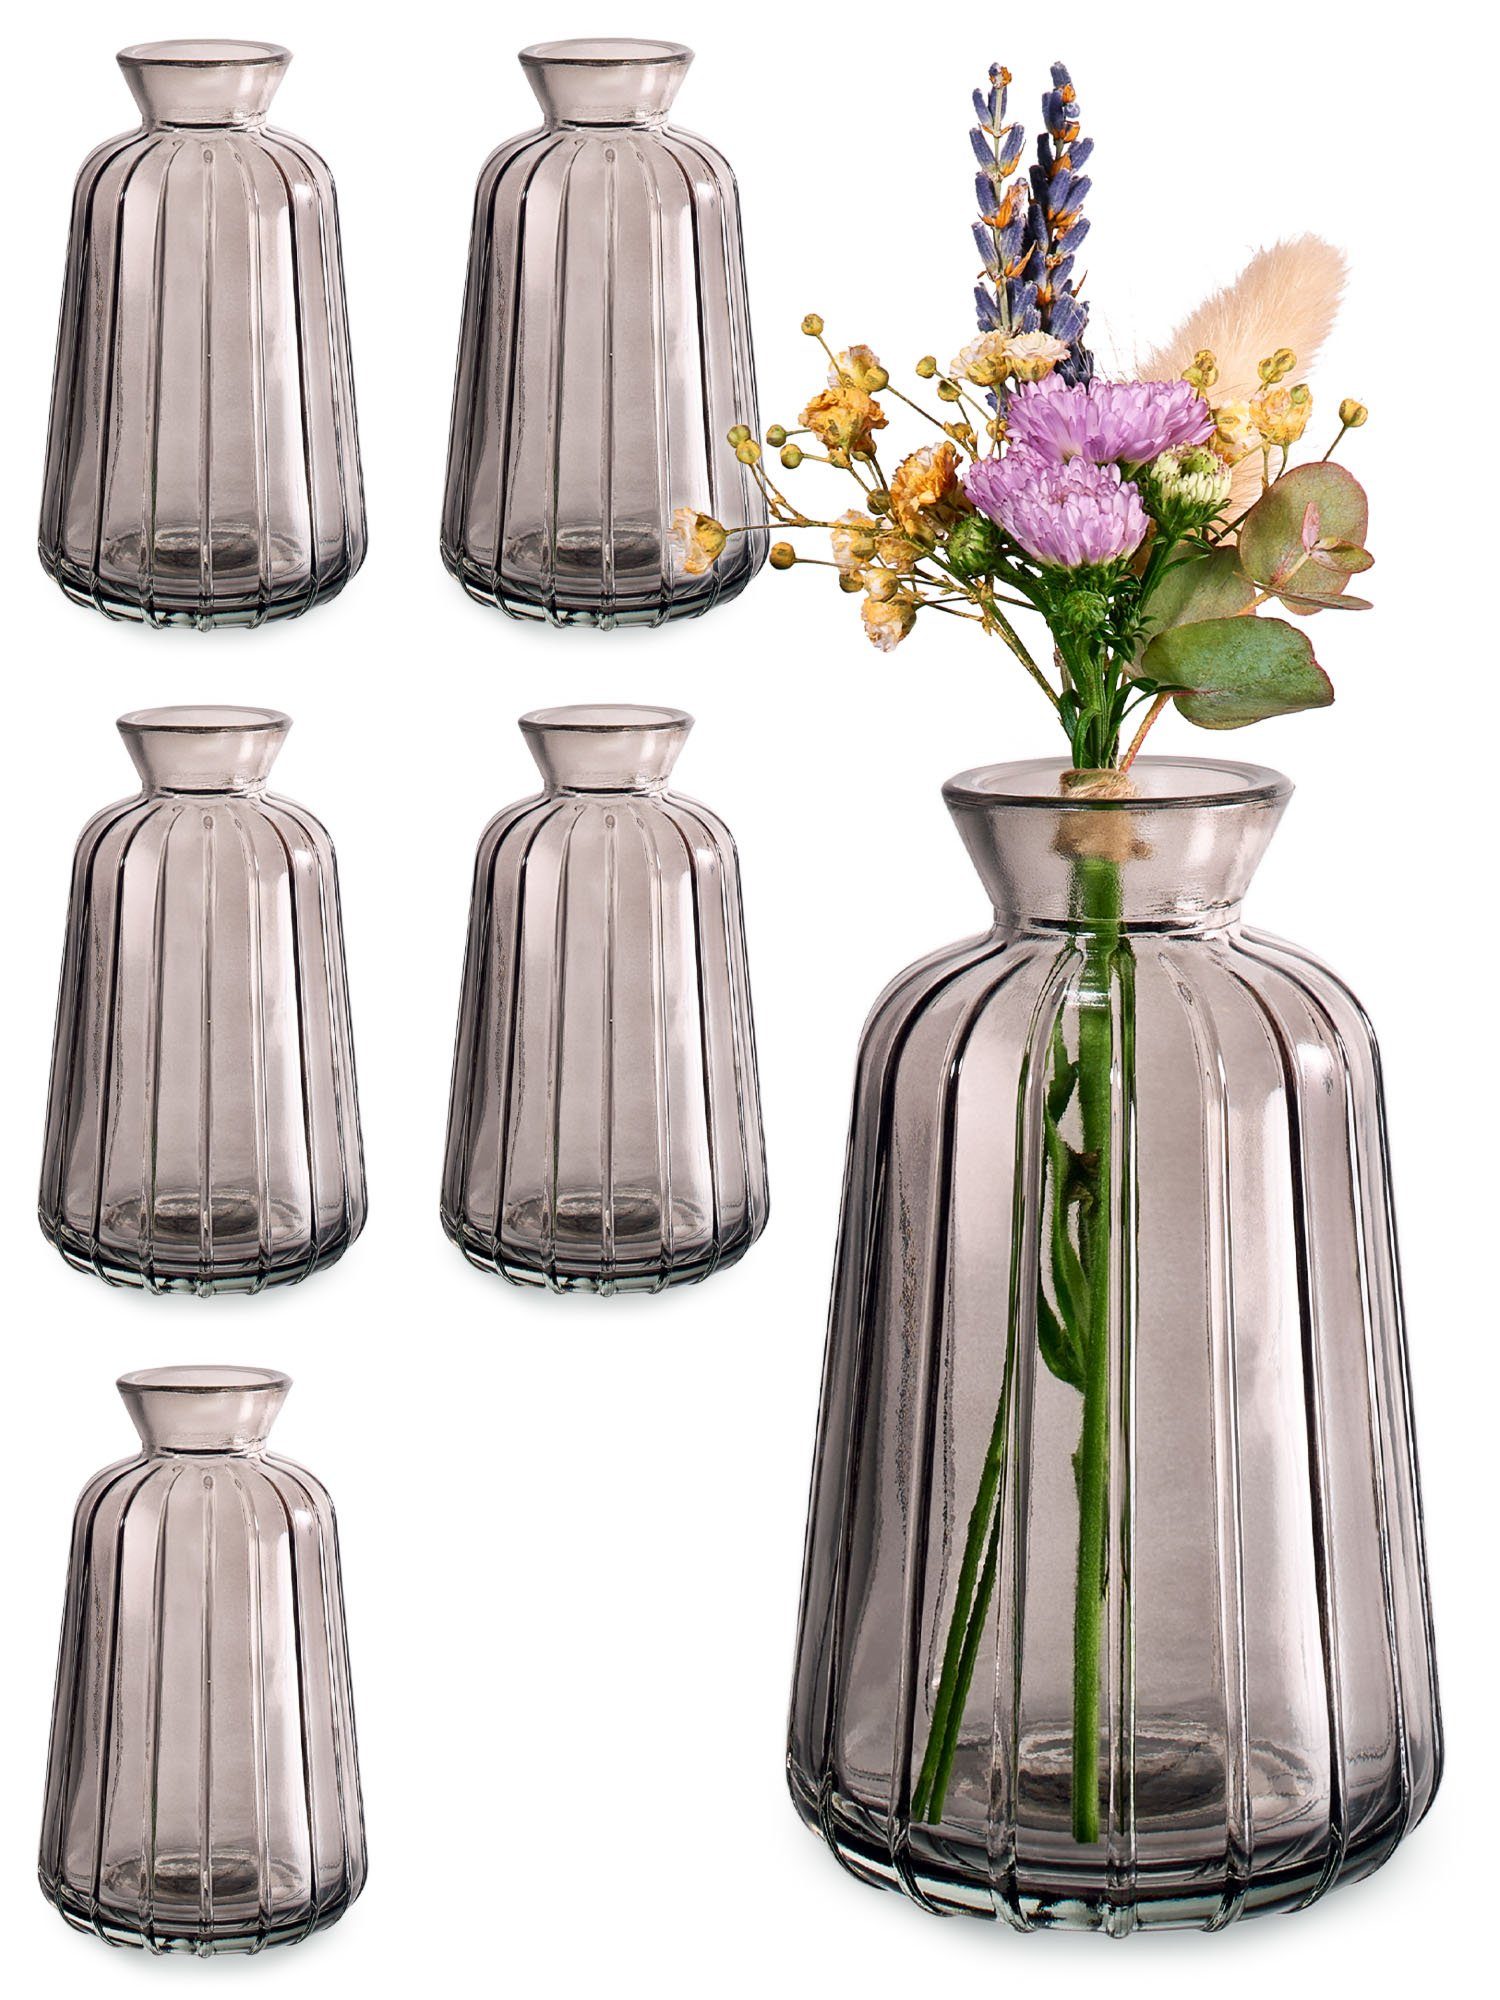 Praknu Tischvase 6 Vintage Glas Minivasen - Runde & Stabile Вази для квітів (Set, 6 St), Spülmaschinenfest - Kleine Glasvasen für Hochzeit Tischdeko - Grau